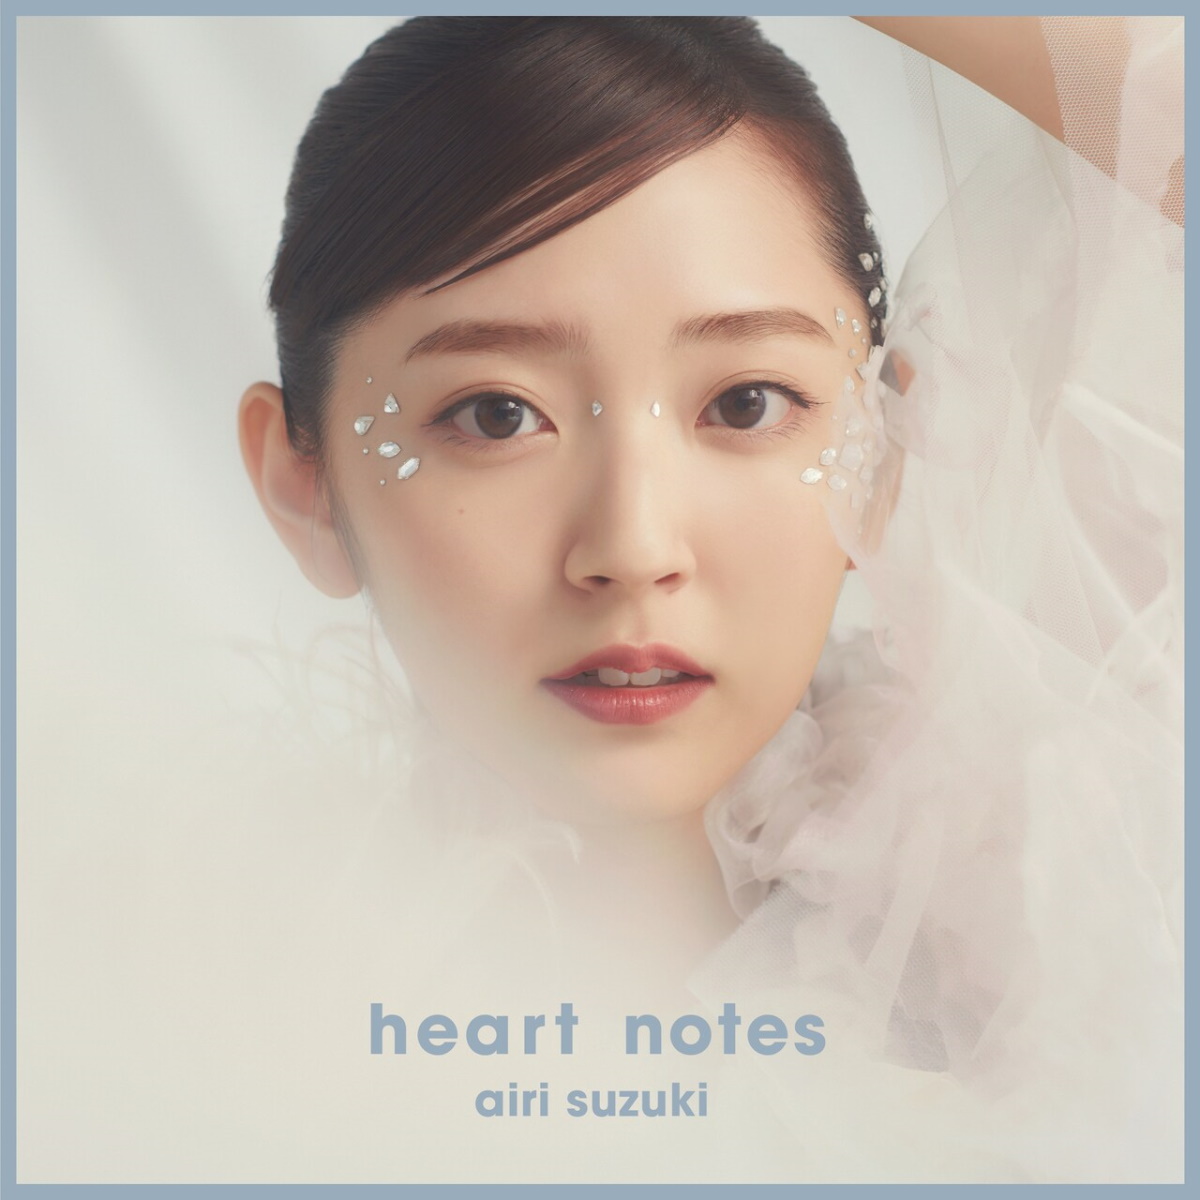 『鈴木愛理 - heart notes』収録の『heart notes』ジャケット